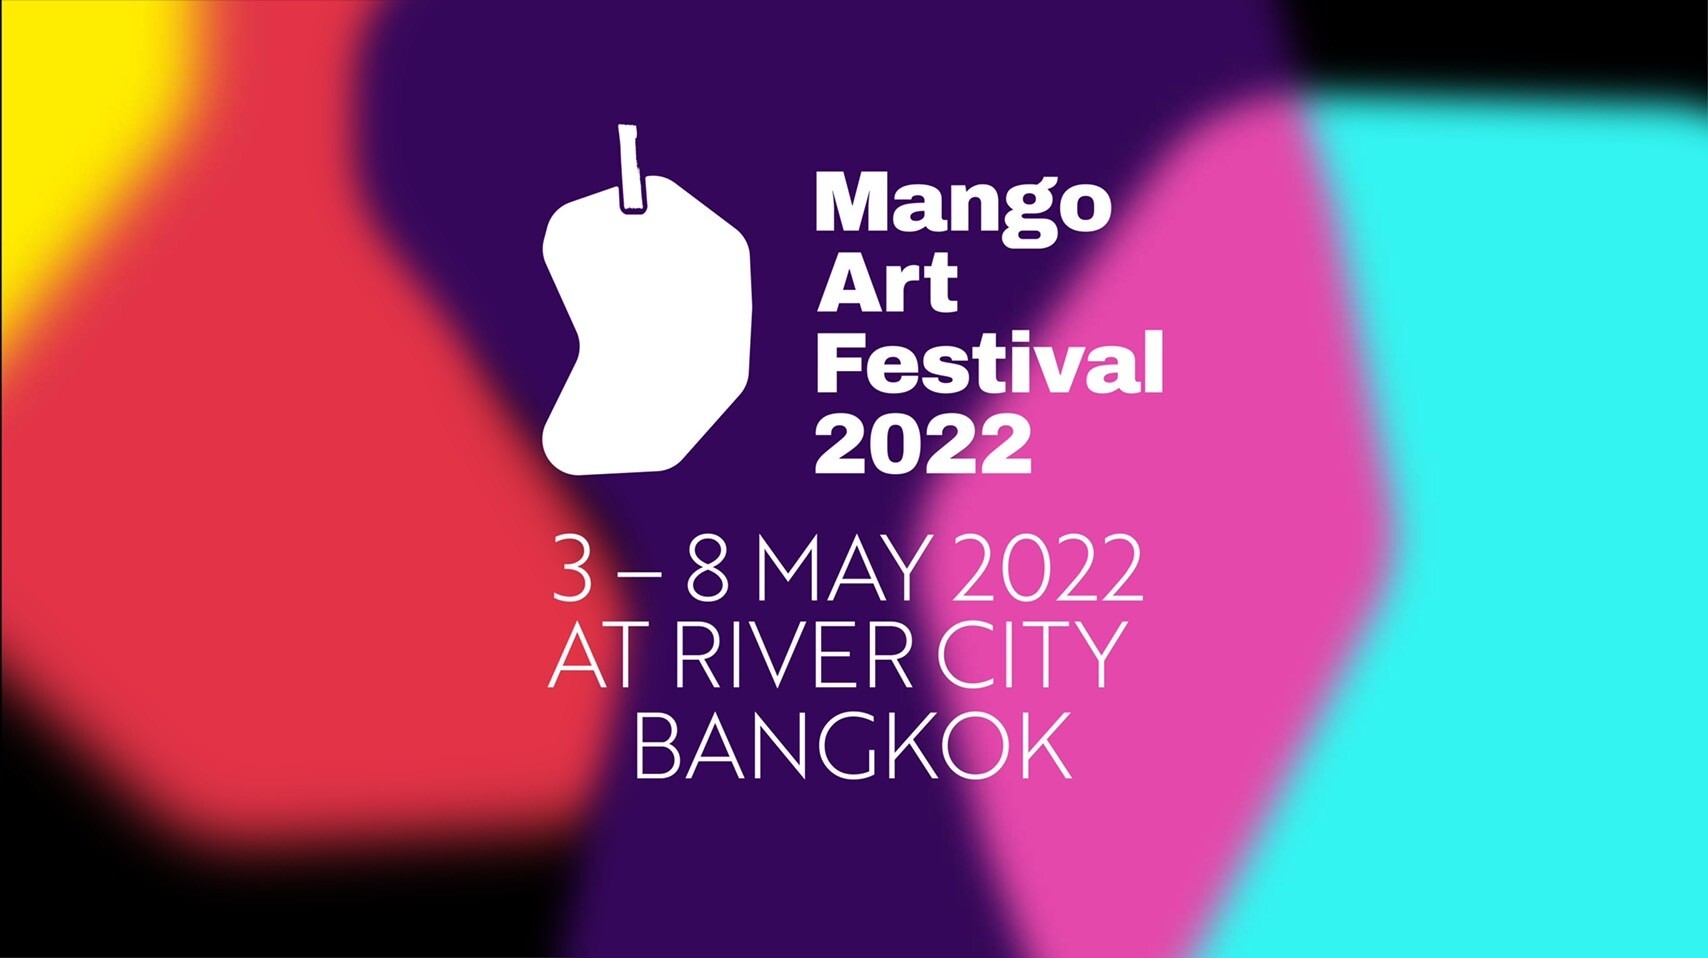 เหตุผลที่คนรักงานศิลป์ปลื้มเจริญกรุง และปีนี้ "Mango Art Festival 2022" จะบุกเจริญกรุง!